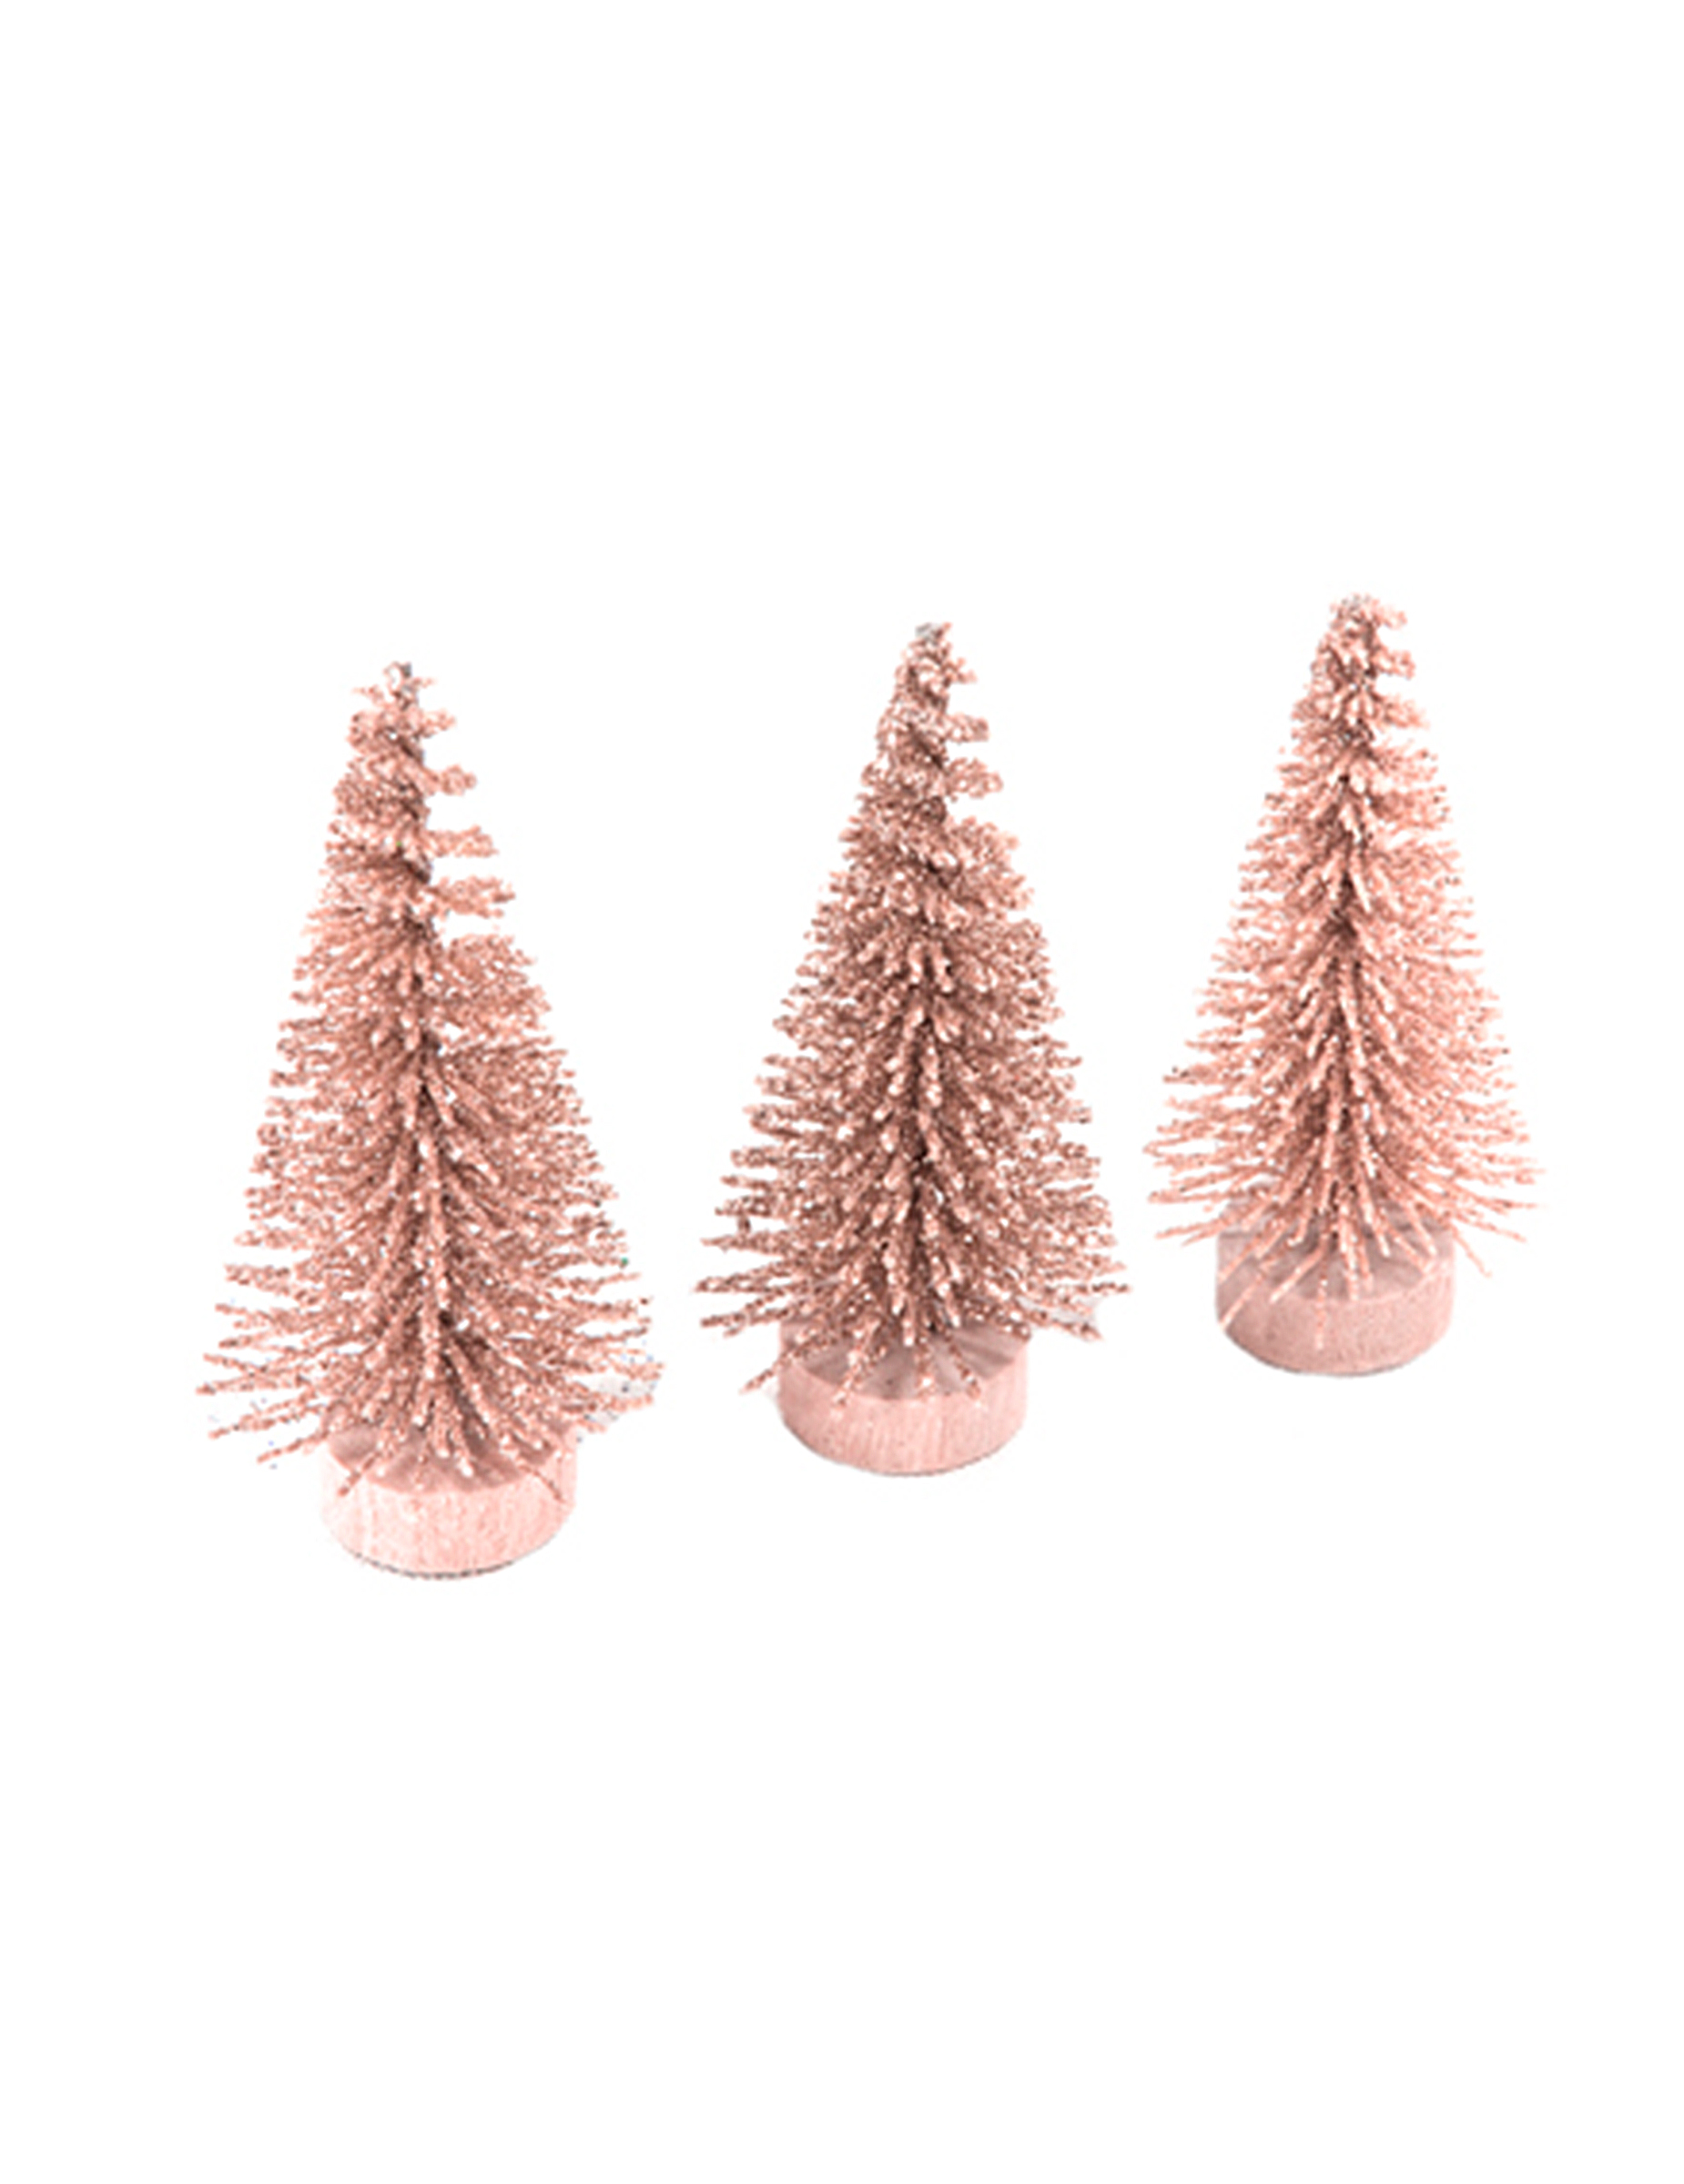 Glitzerndes Mini-Weihnachtsbaum Set 3 Stück roségold 5,5 x 2,5 cm von HOBI